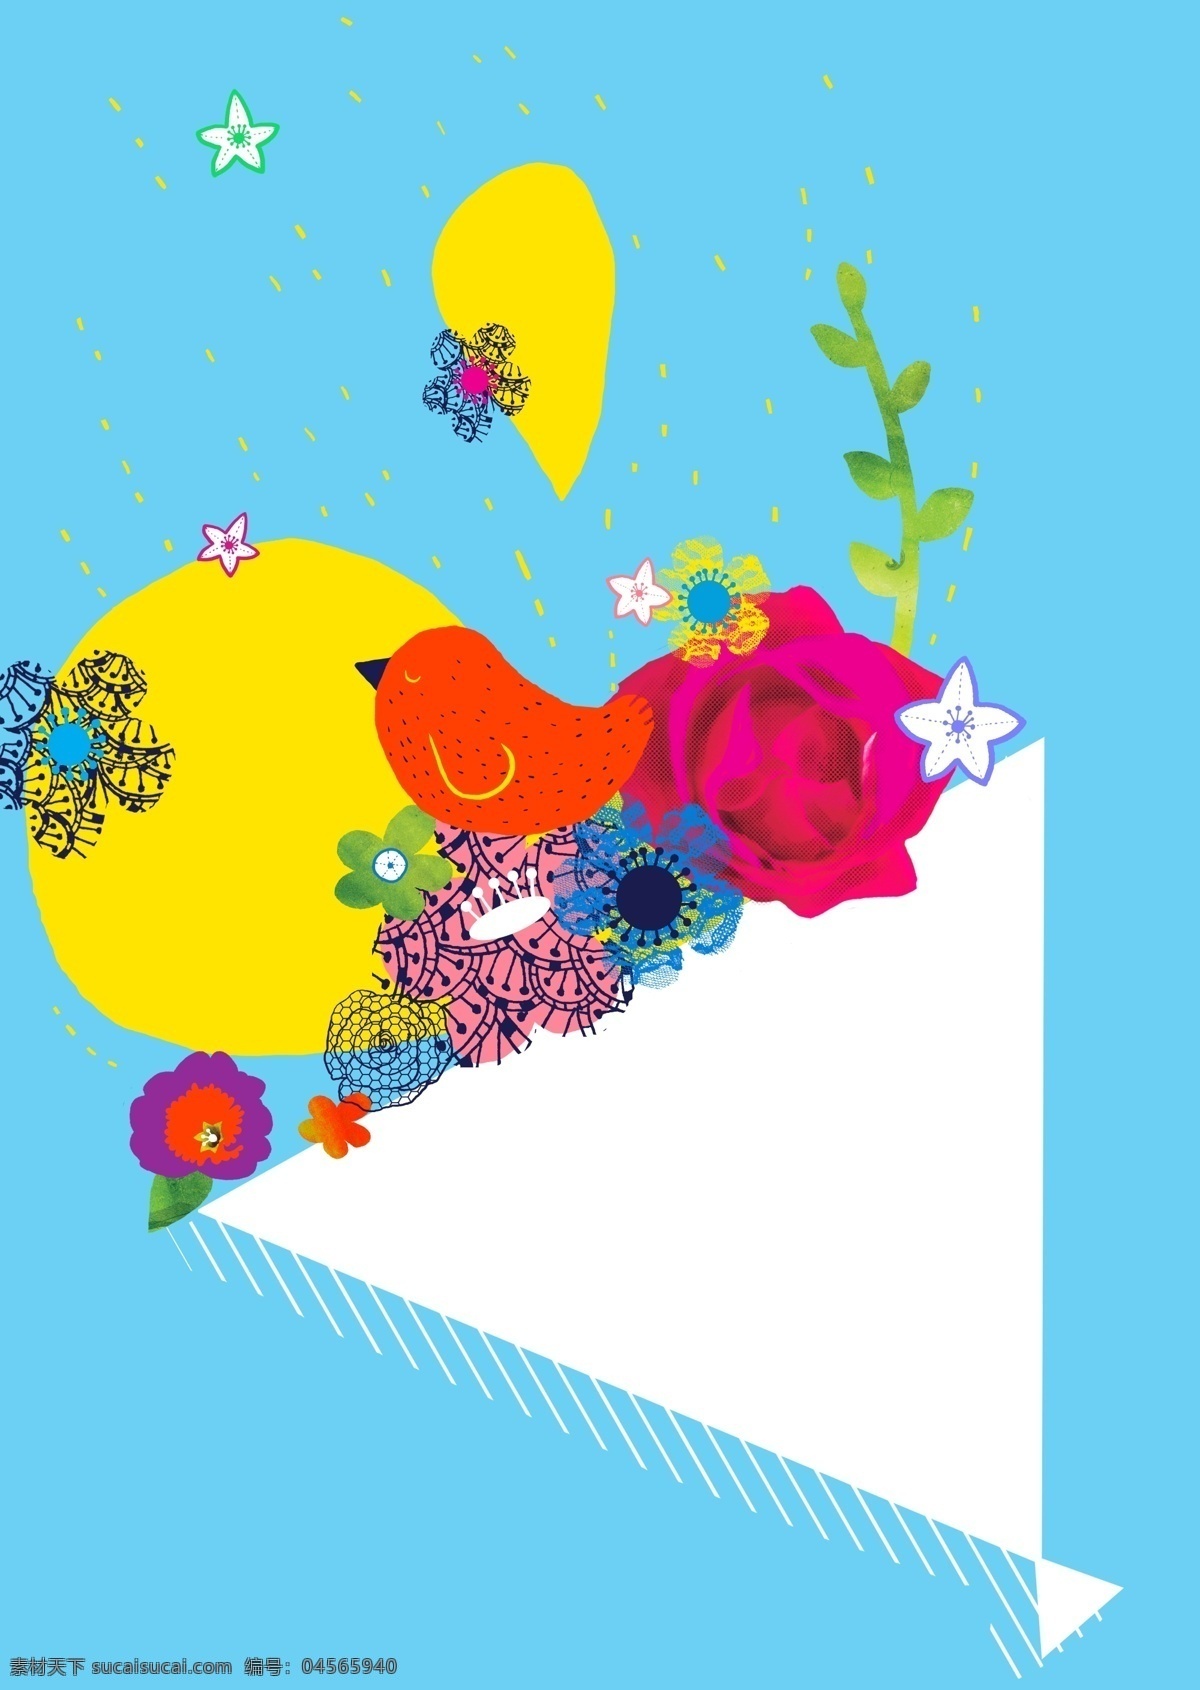 花束 上 小鸟 插画 psd素材 花朵 花卉 植物 psd源文件